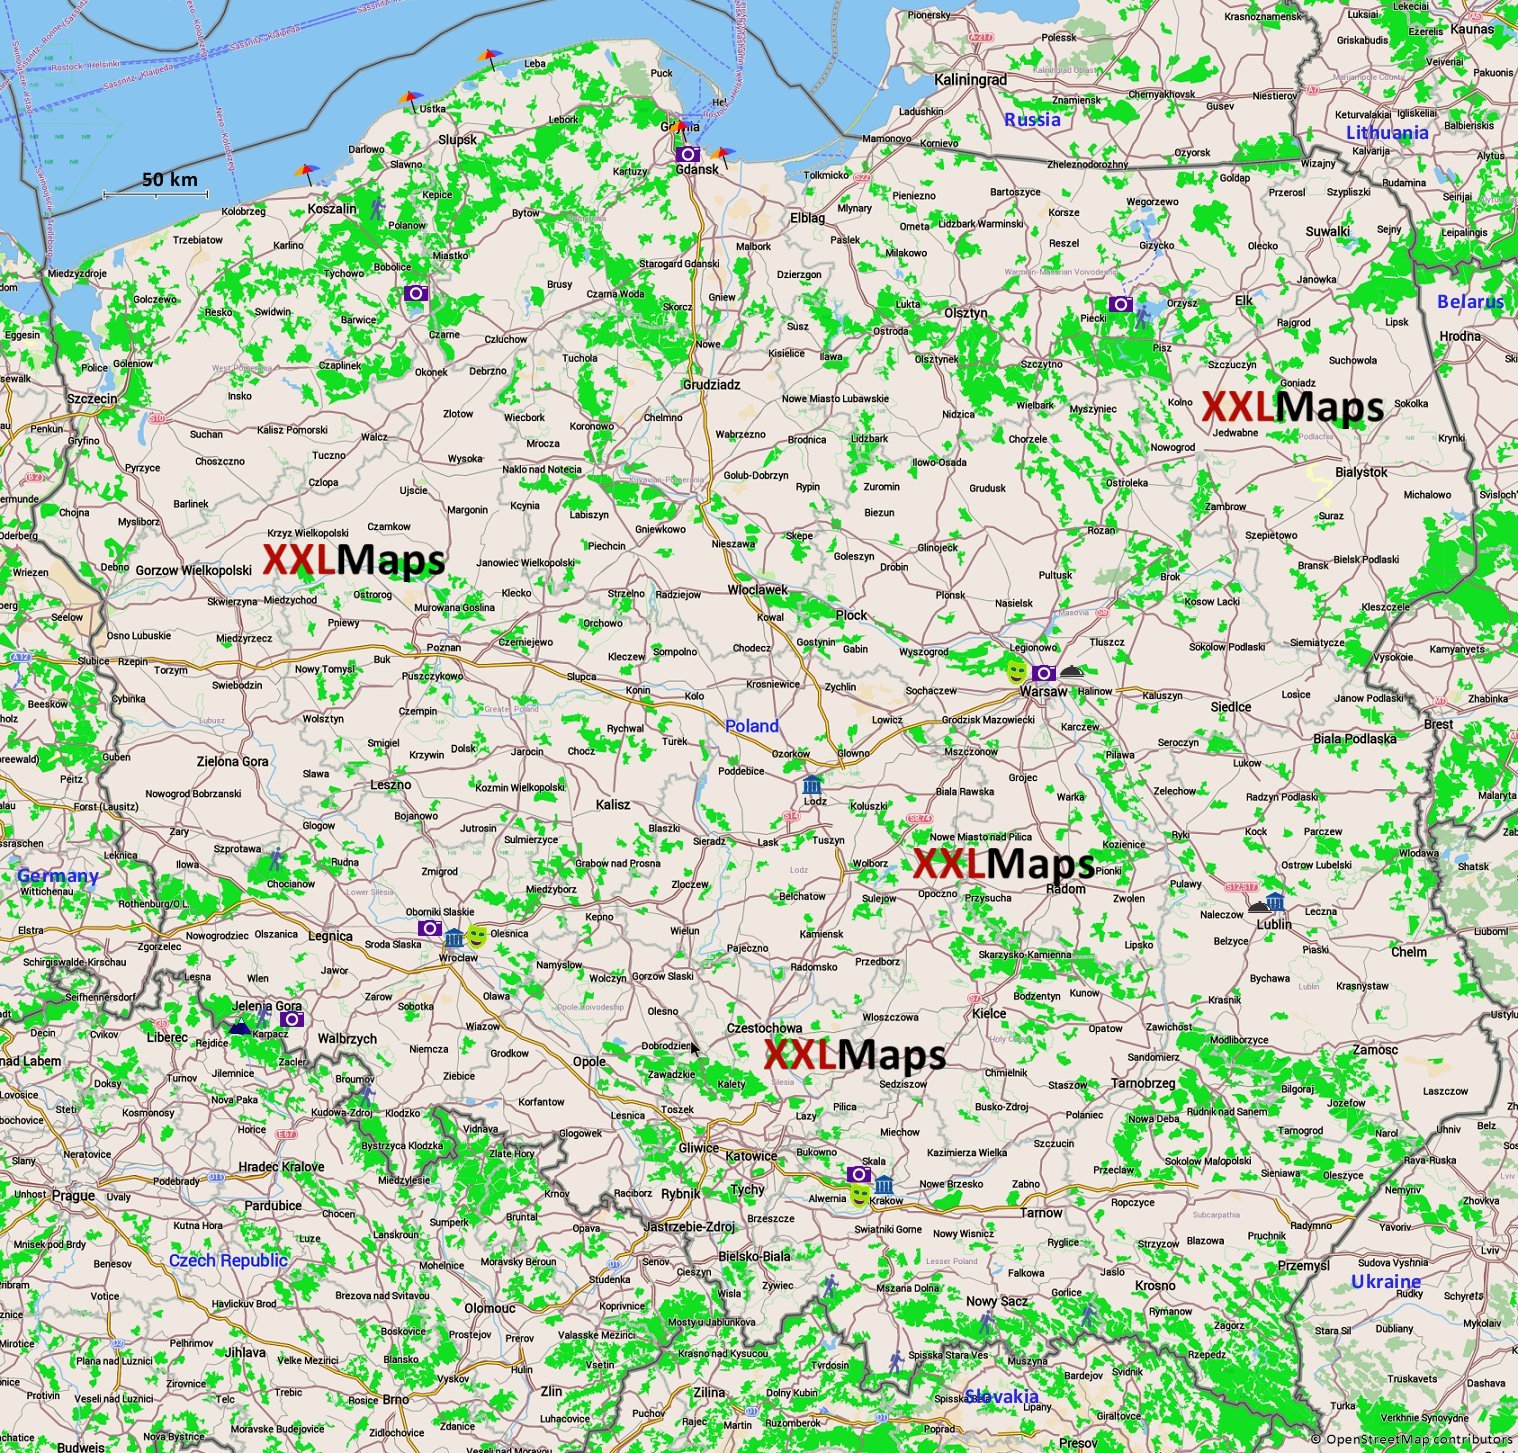 ポーランド無料の観光マップ